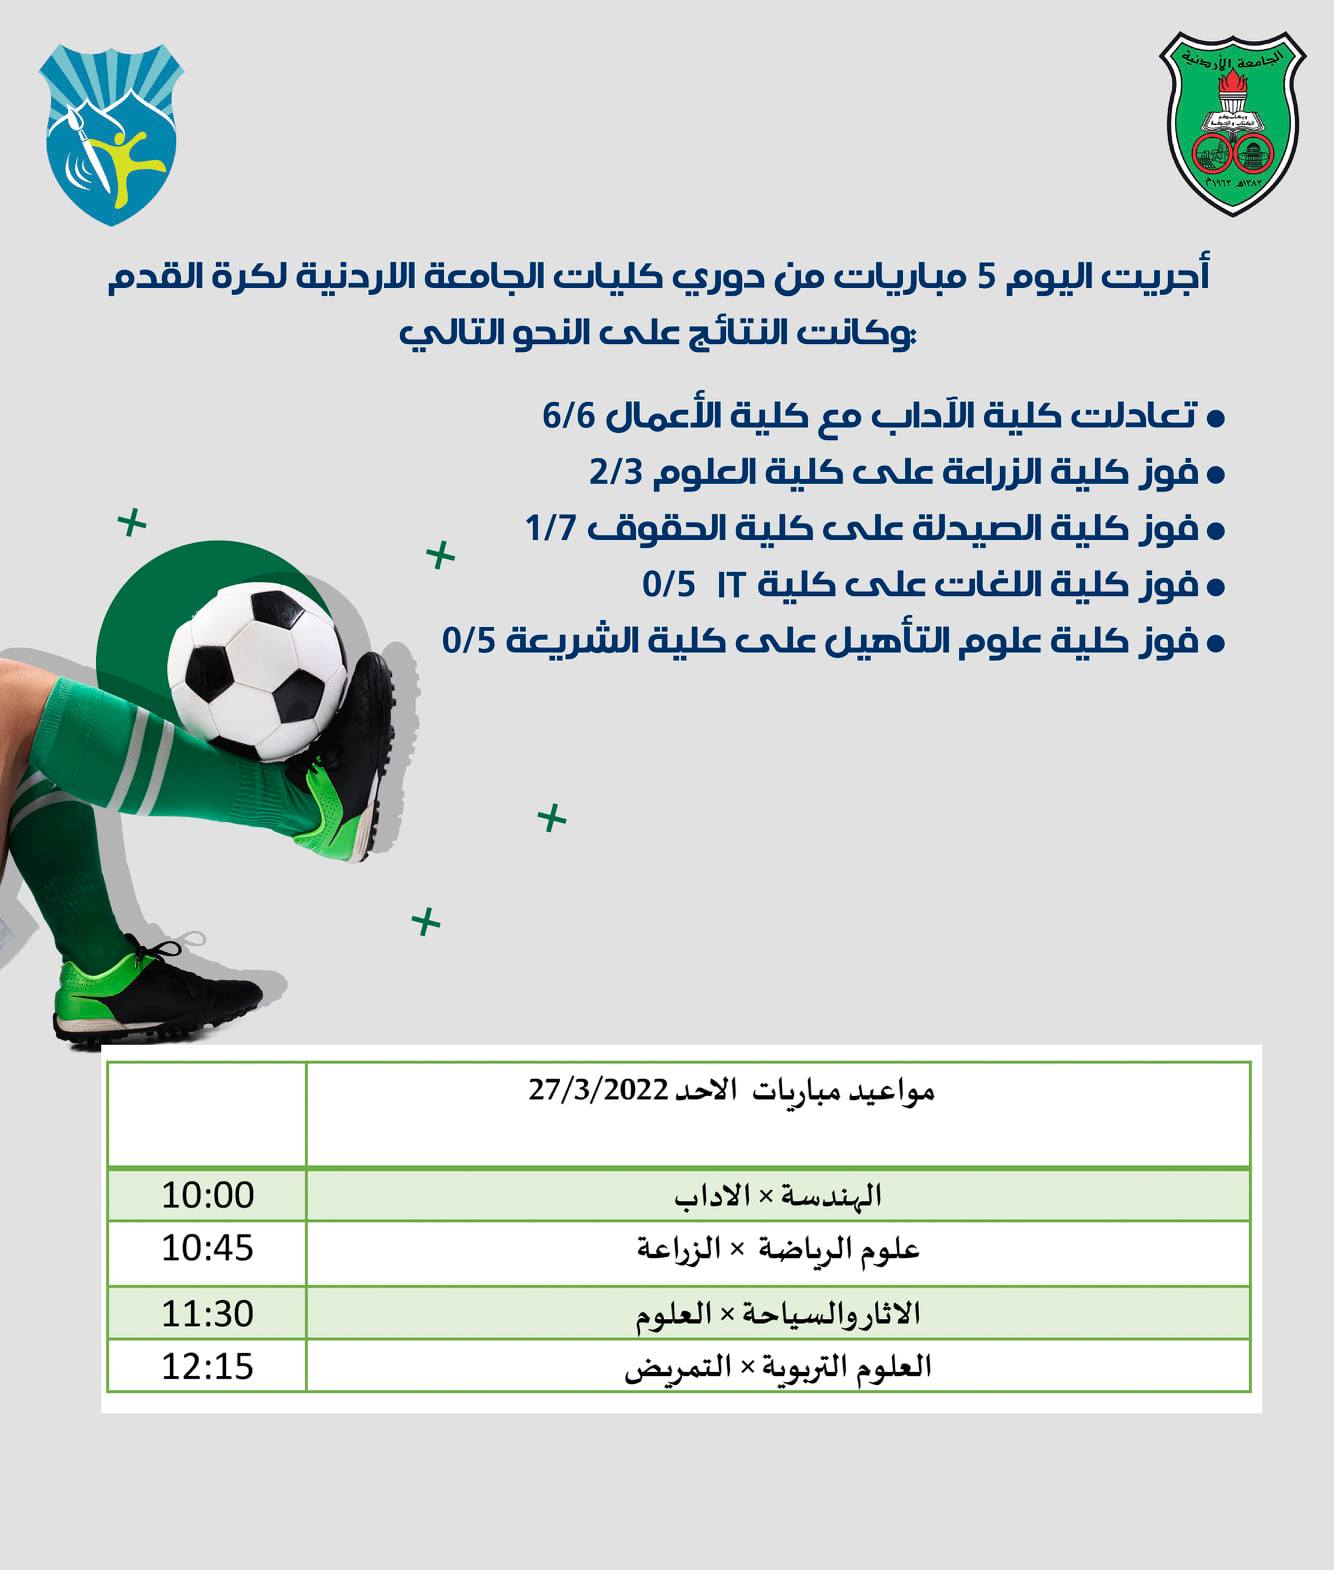 ملخص مباريات دوري كليات الجامعة الأردنية لكرة القدم ليوم 27-3-2022.jpg